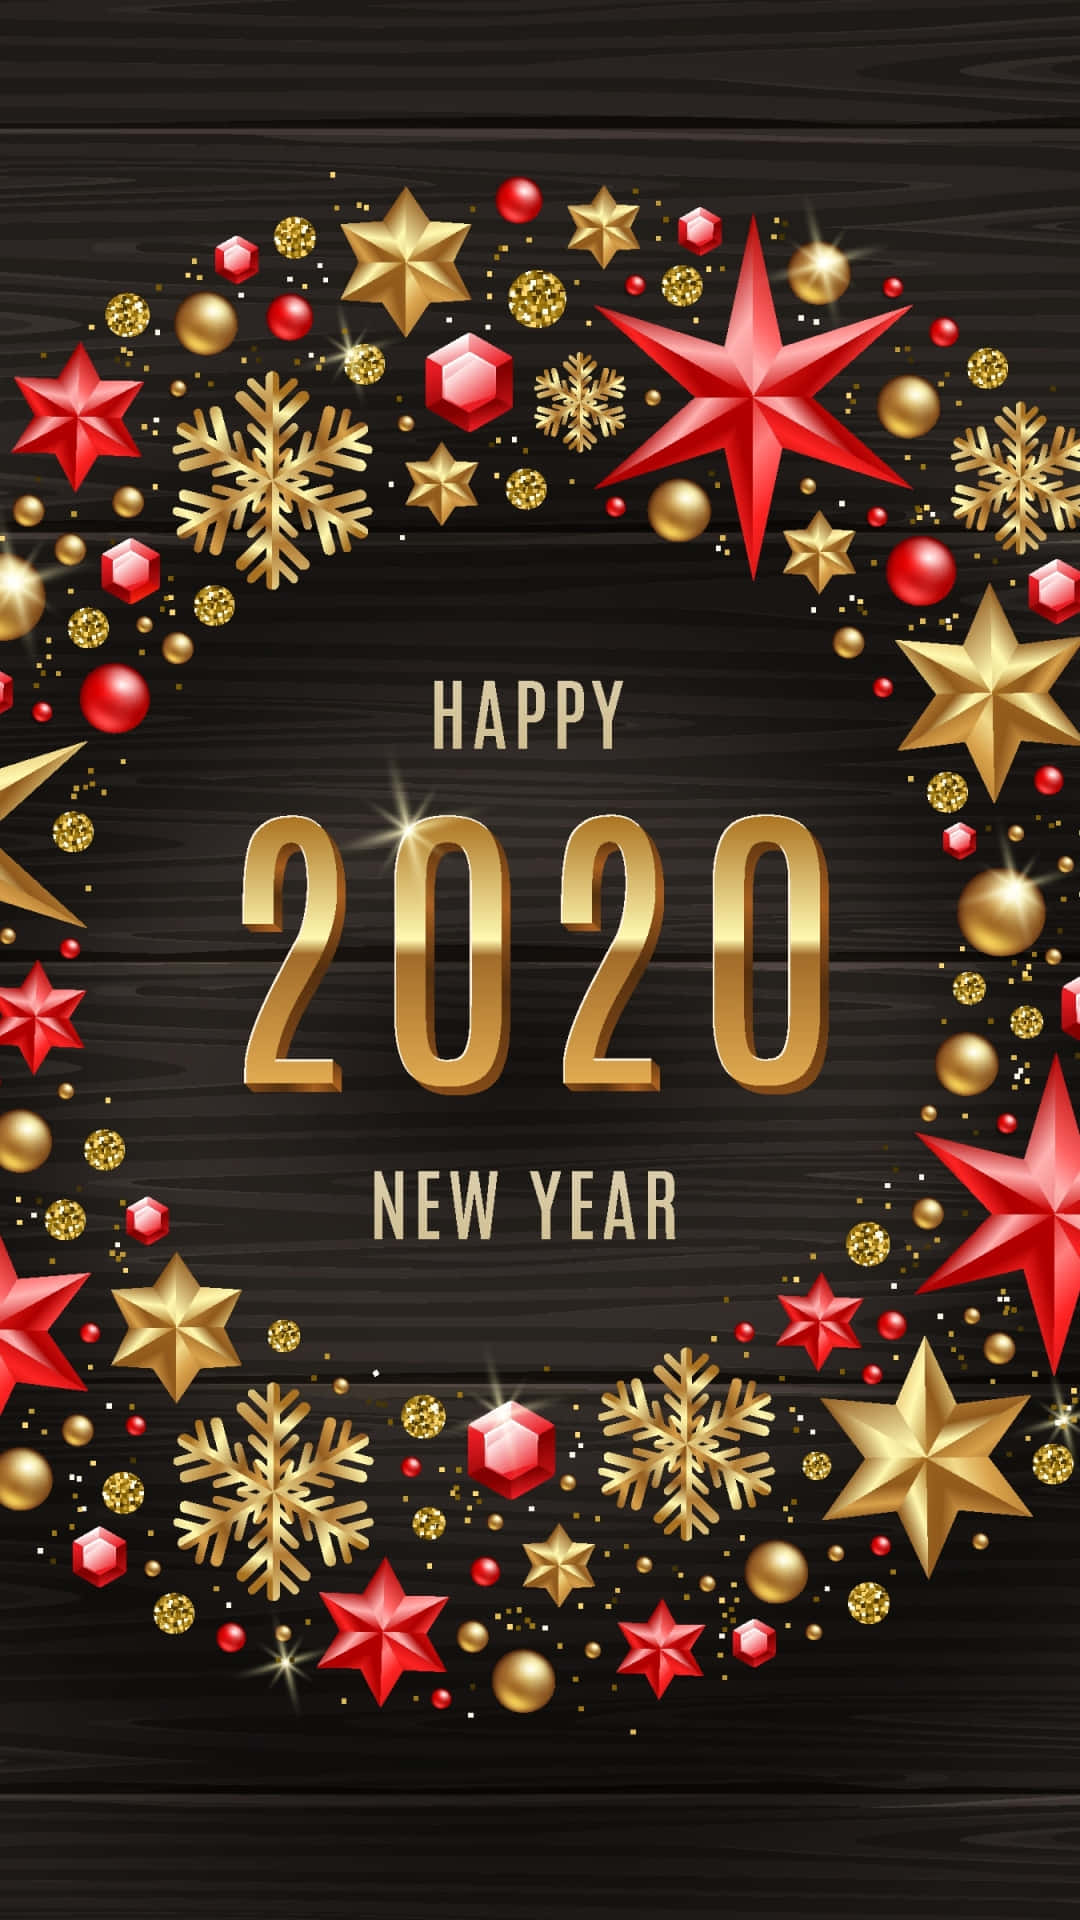 Felizano Novo 2020 Com Estrelas Douradas E Flocos De Neve Em Um Fundo Preto. Papel de Parede